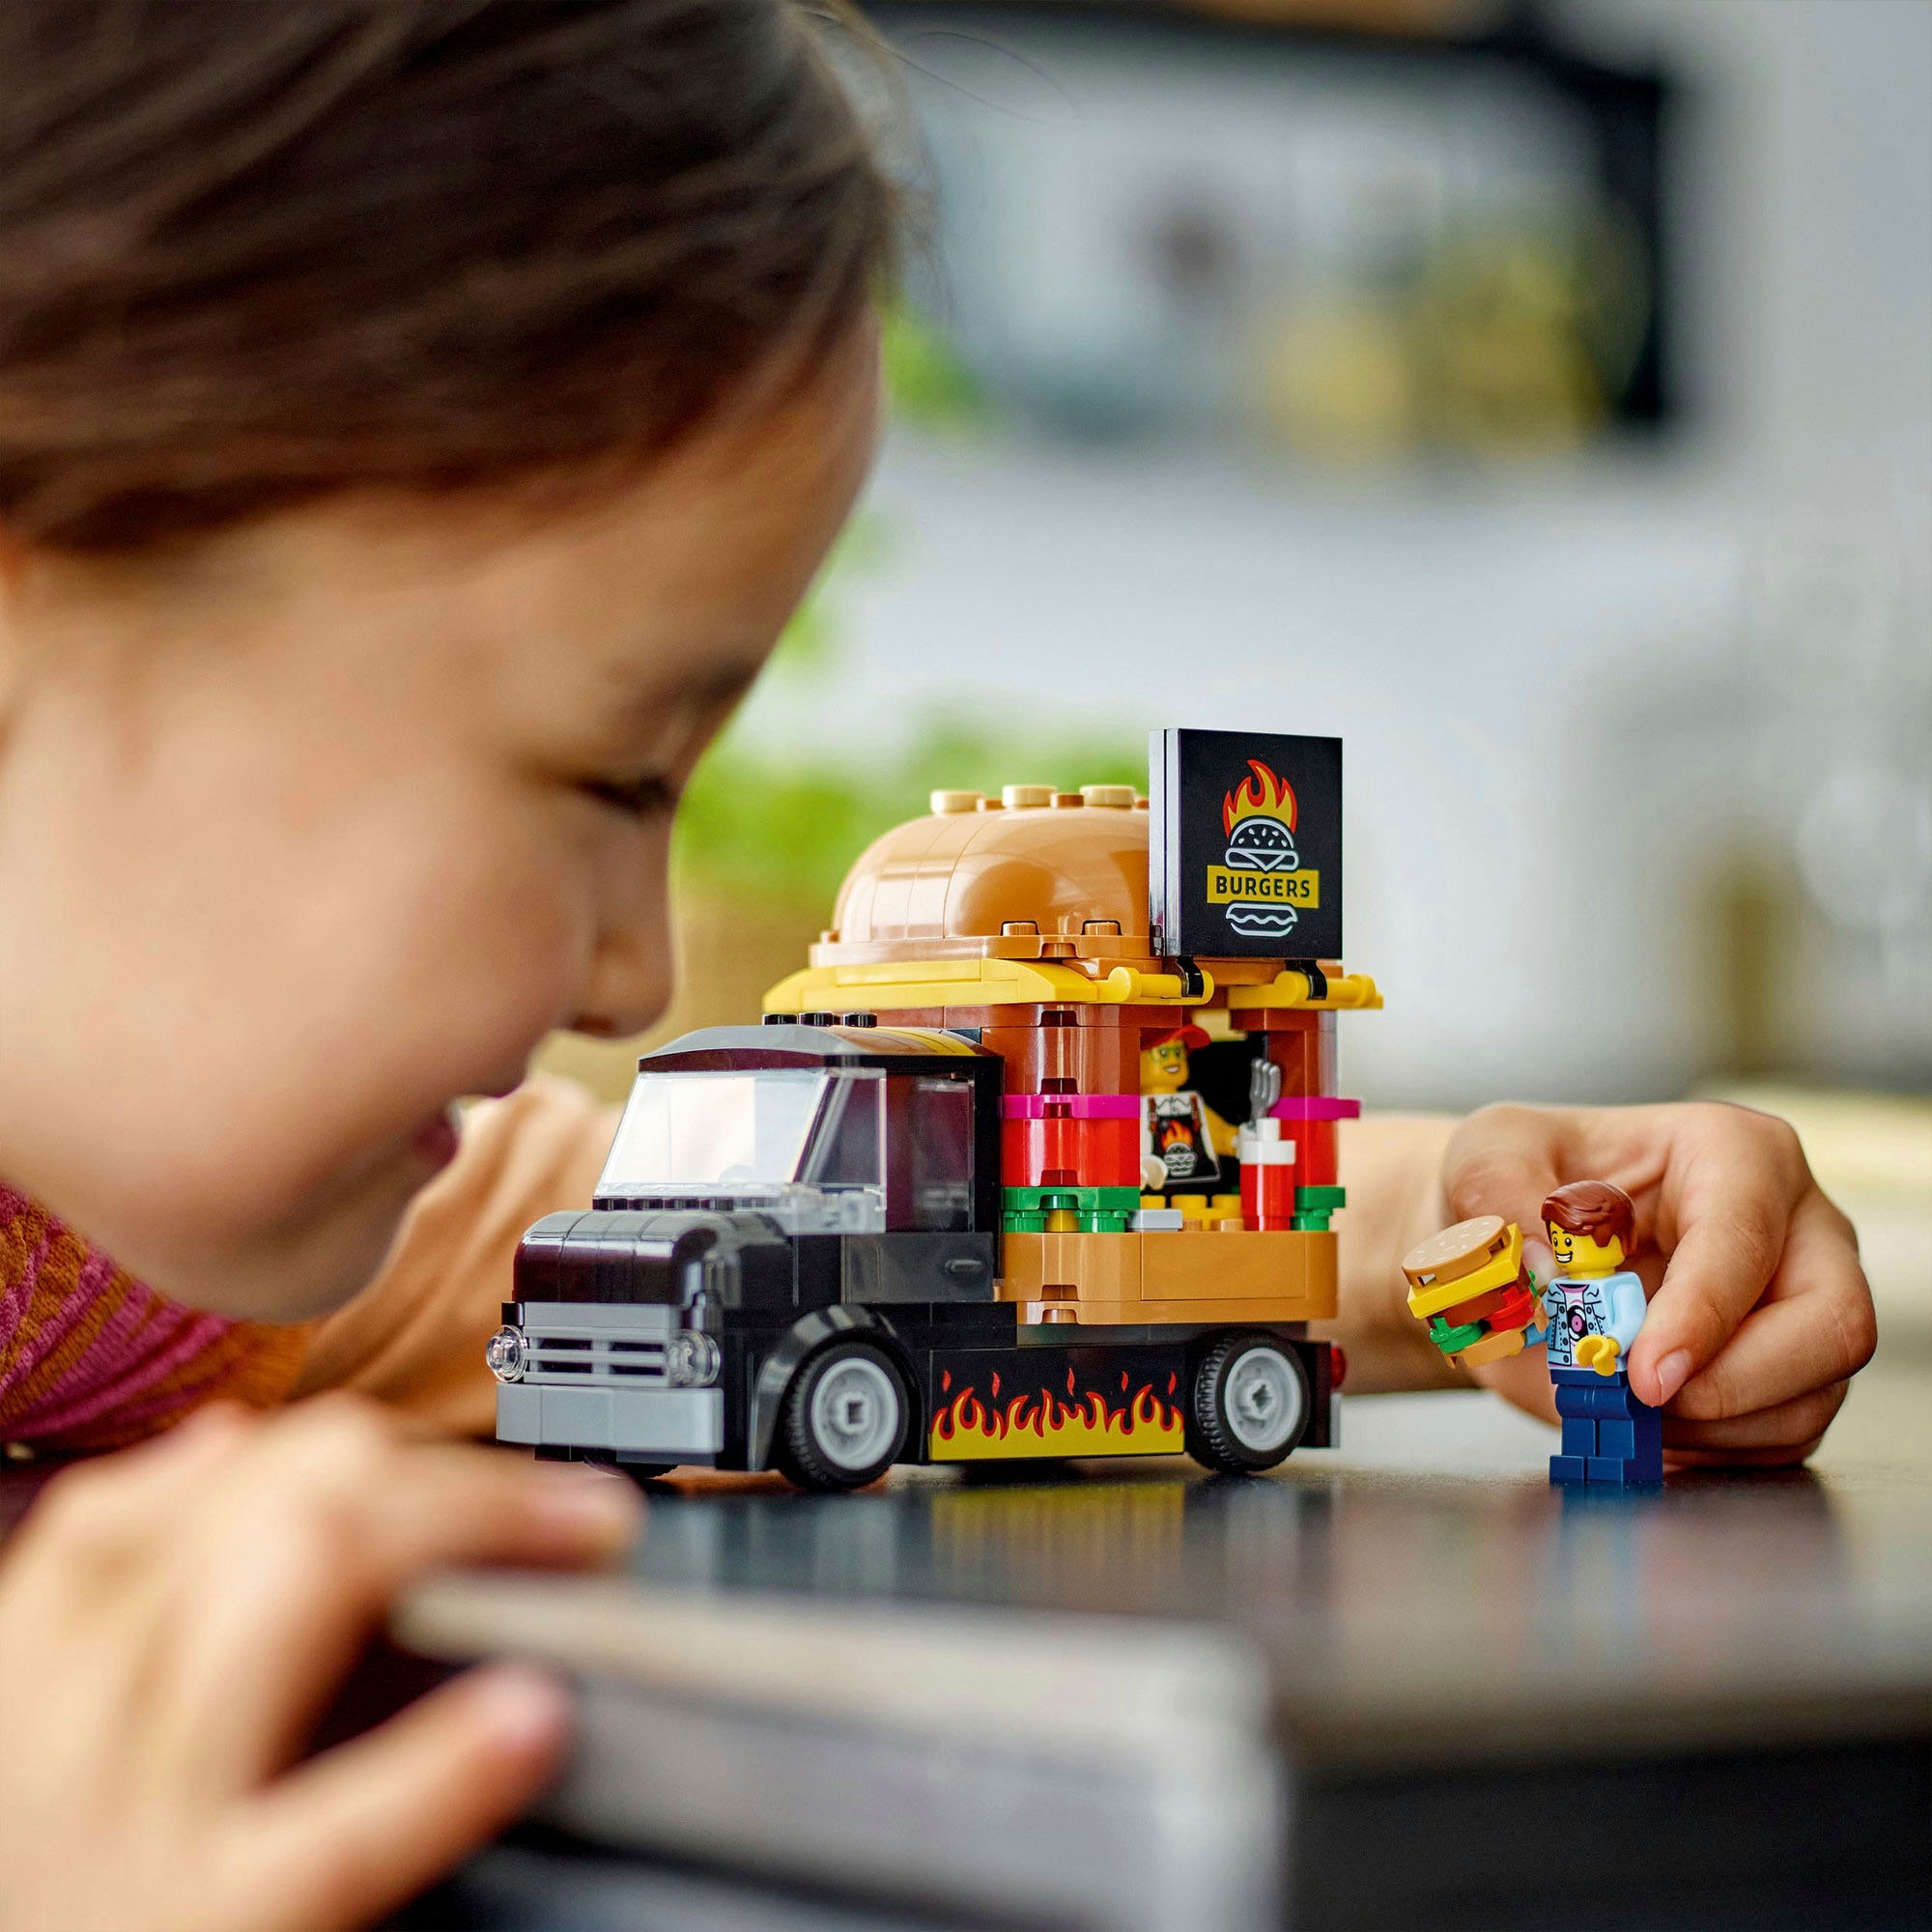 LEGO® Konstruktionsspielsteine »Burger-Truck (60404), LEGO City«, (194 St.), Made in Europe